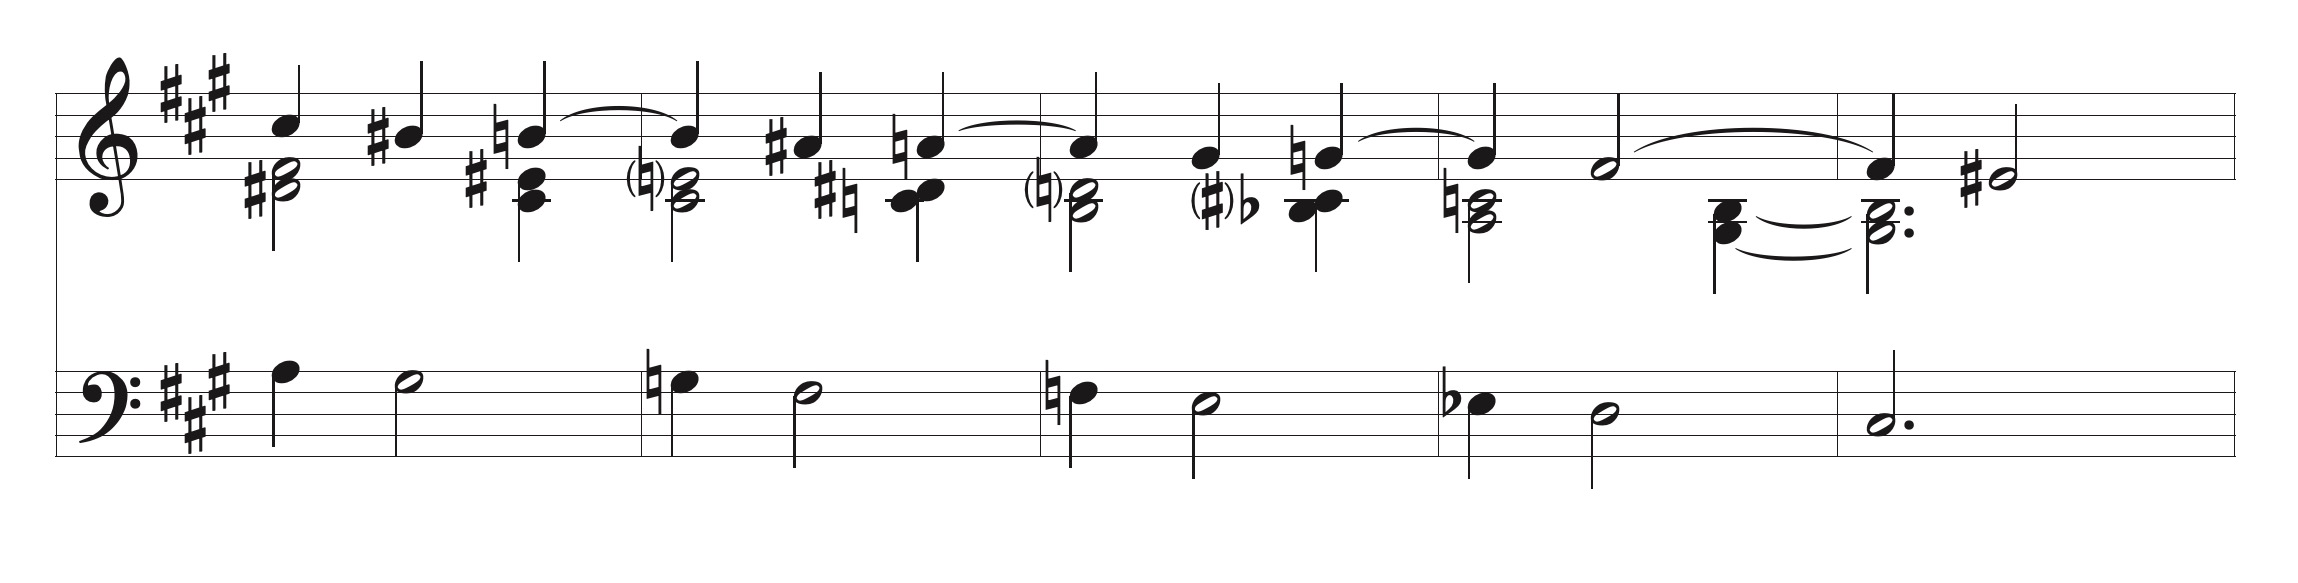 chopin sequence mazurka op. 6.1002.jpeg